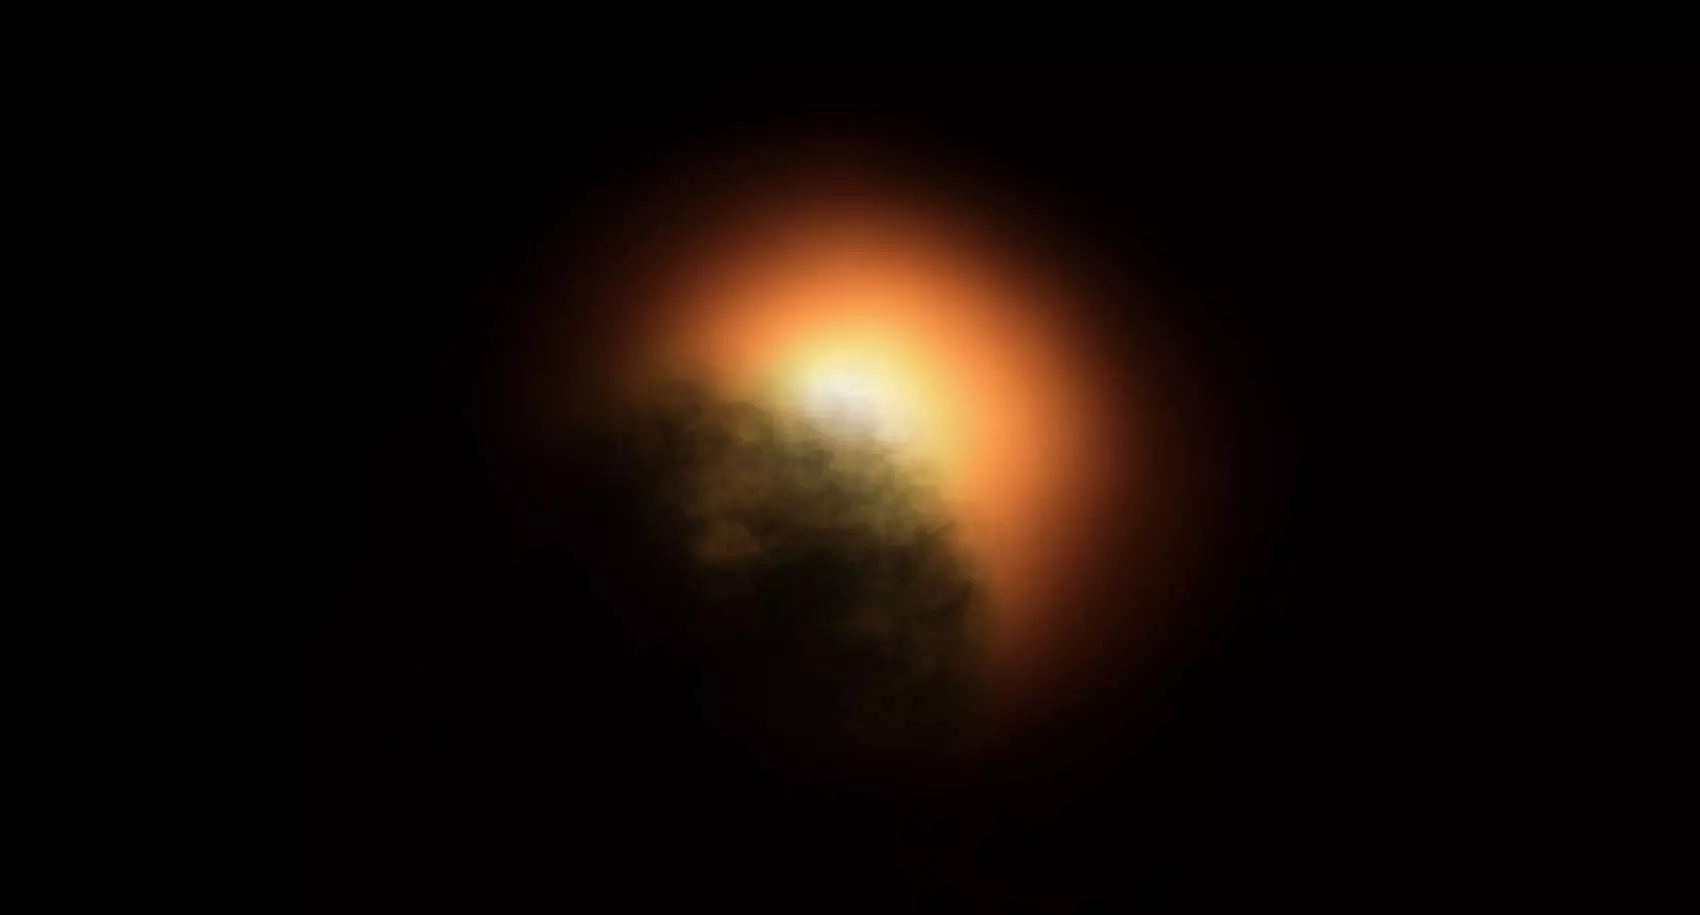 A Hubble szerint porfelhő halványíthatta el a Betelgeuse-t